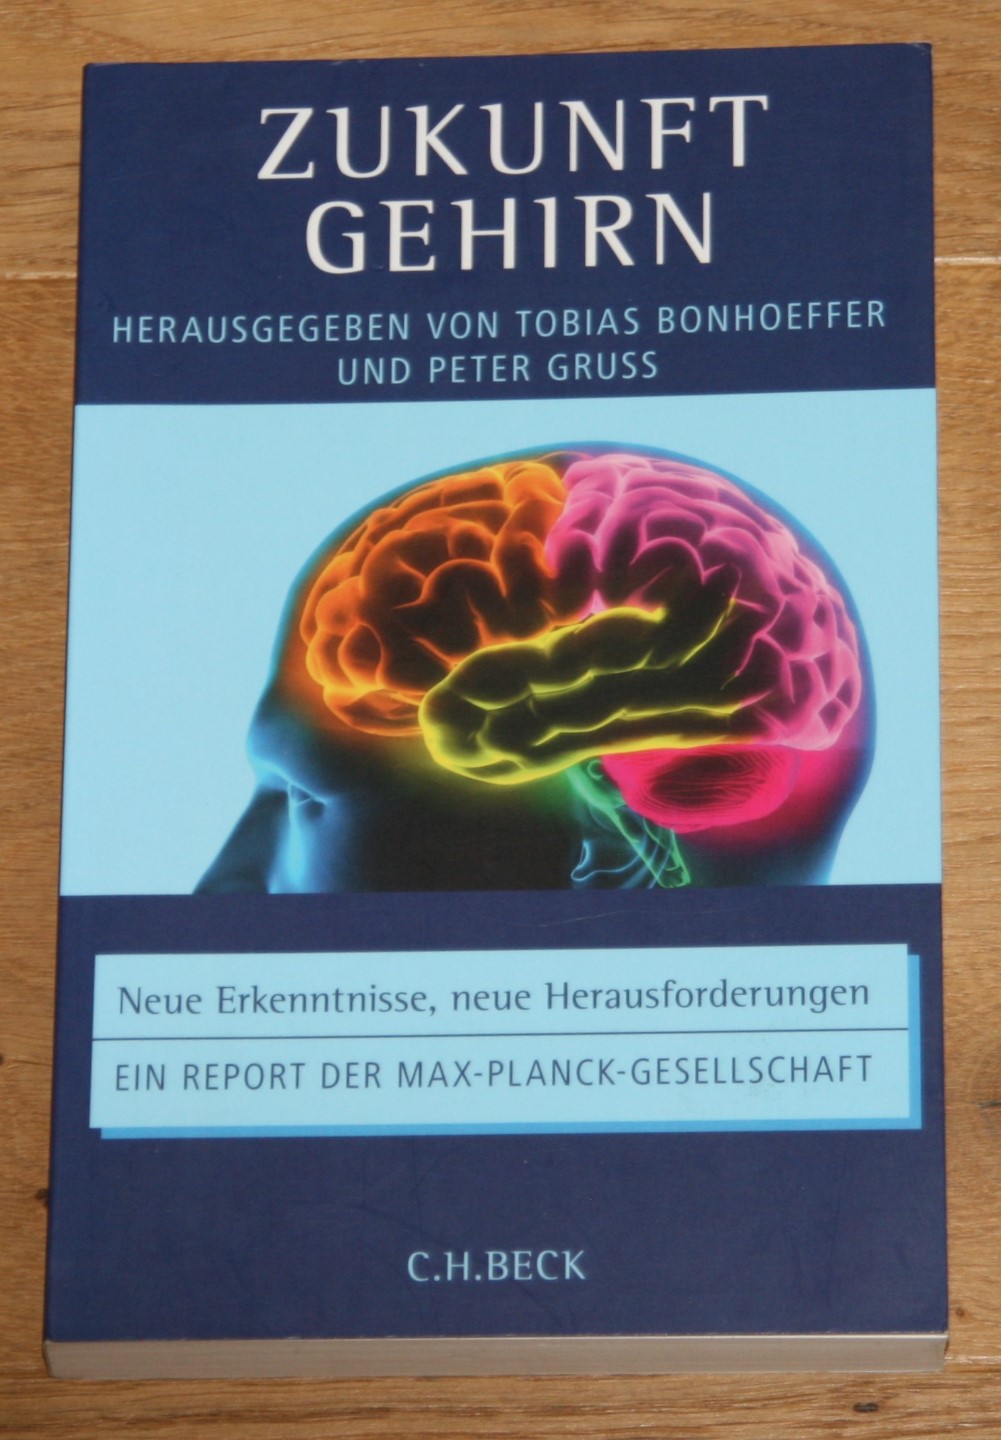 Zukunft Gehirn: Neue Erkenntnisse, neue Herausforderungen. [Ein Report der Max-Planck-Gesellschaft.], - Bonhoeffer, Tobias (Herausgeber) und Peter Gruss (Herausgeber)